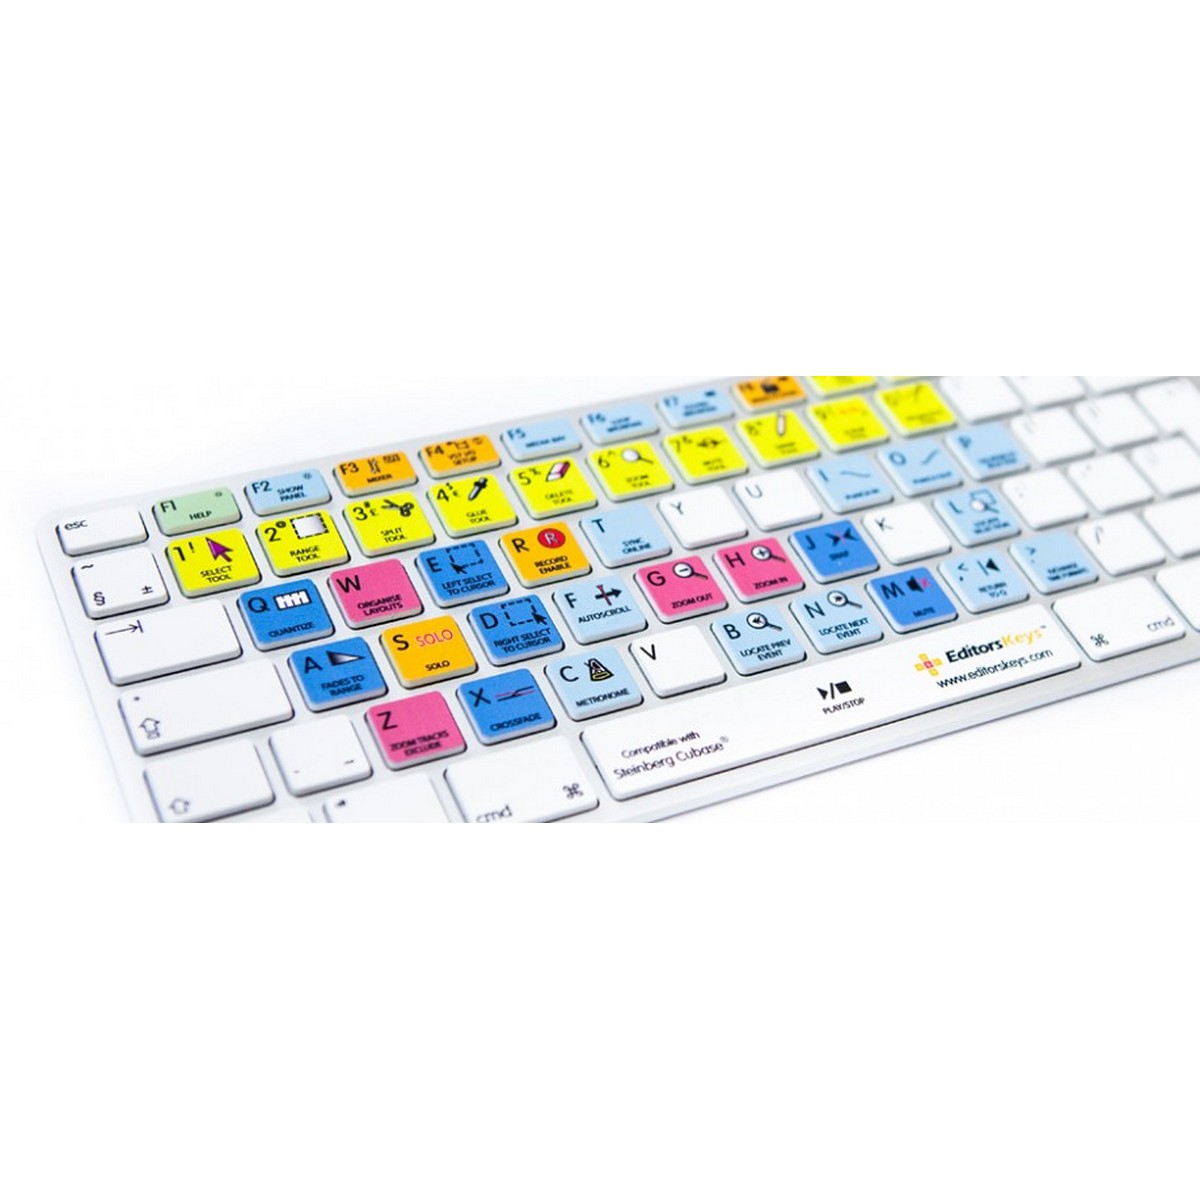 Editors Keys Apple Keyboard for Cubase Apple Shortcut Wired Keyboard (Used)